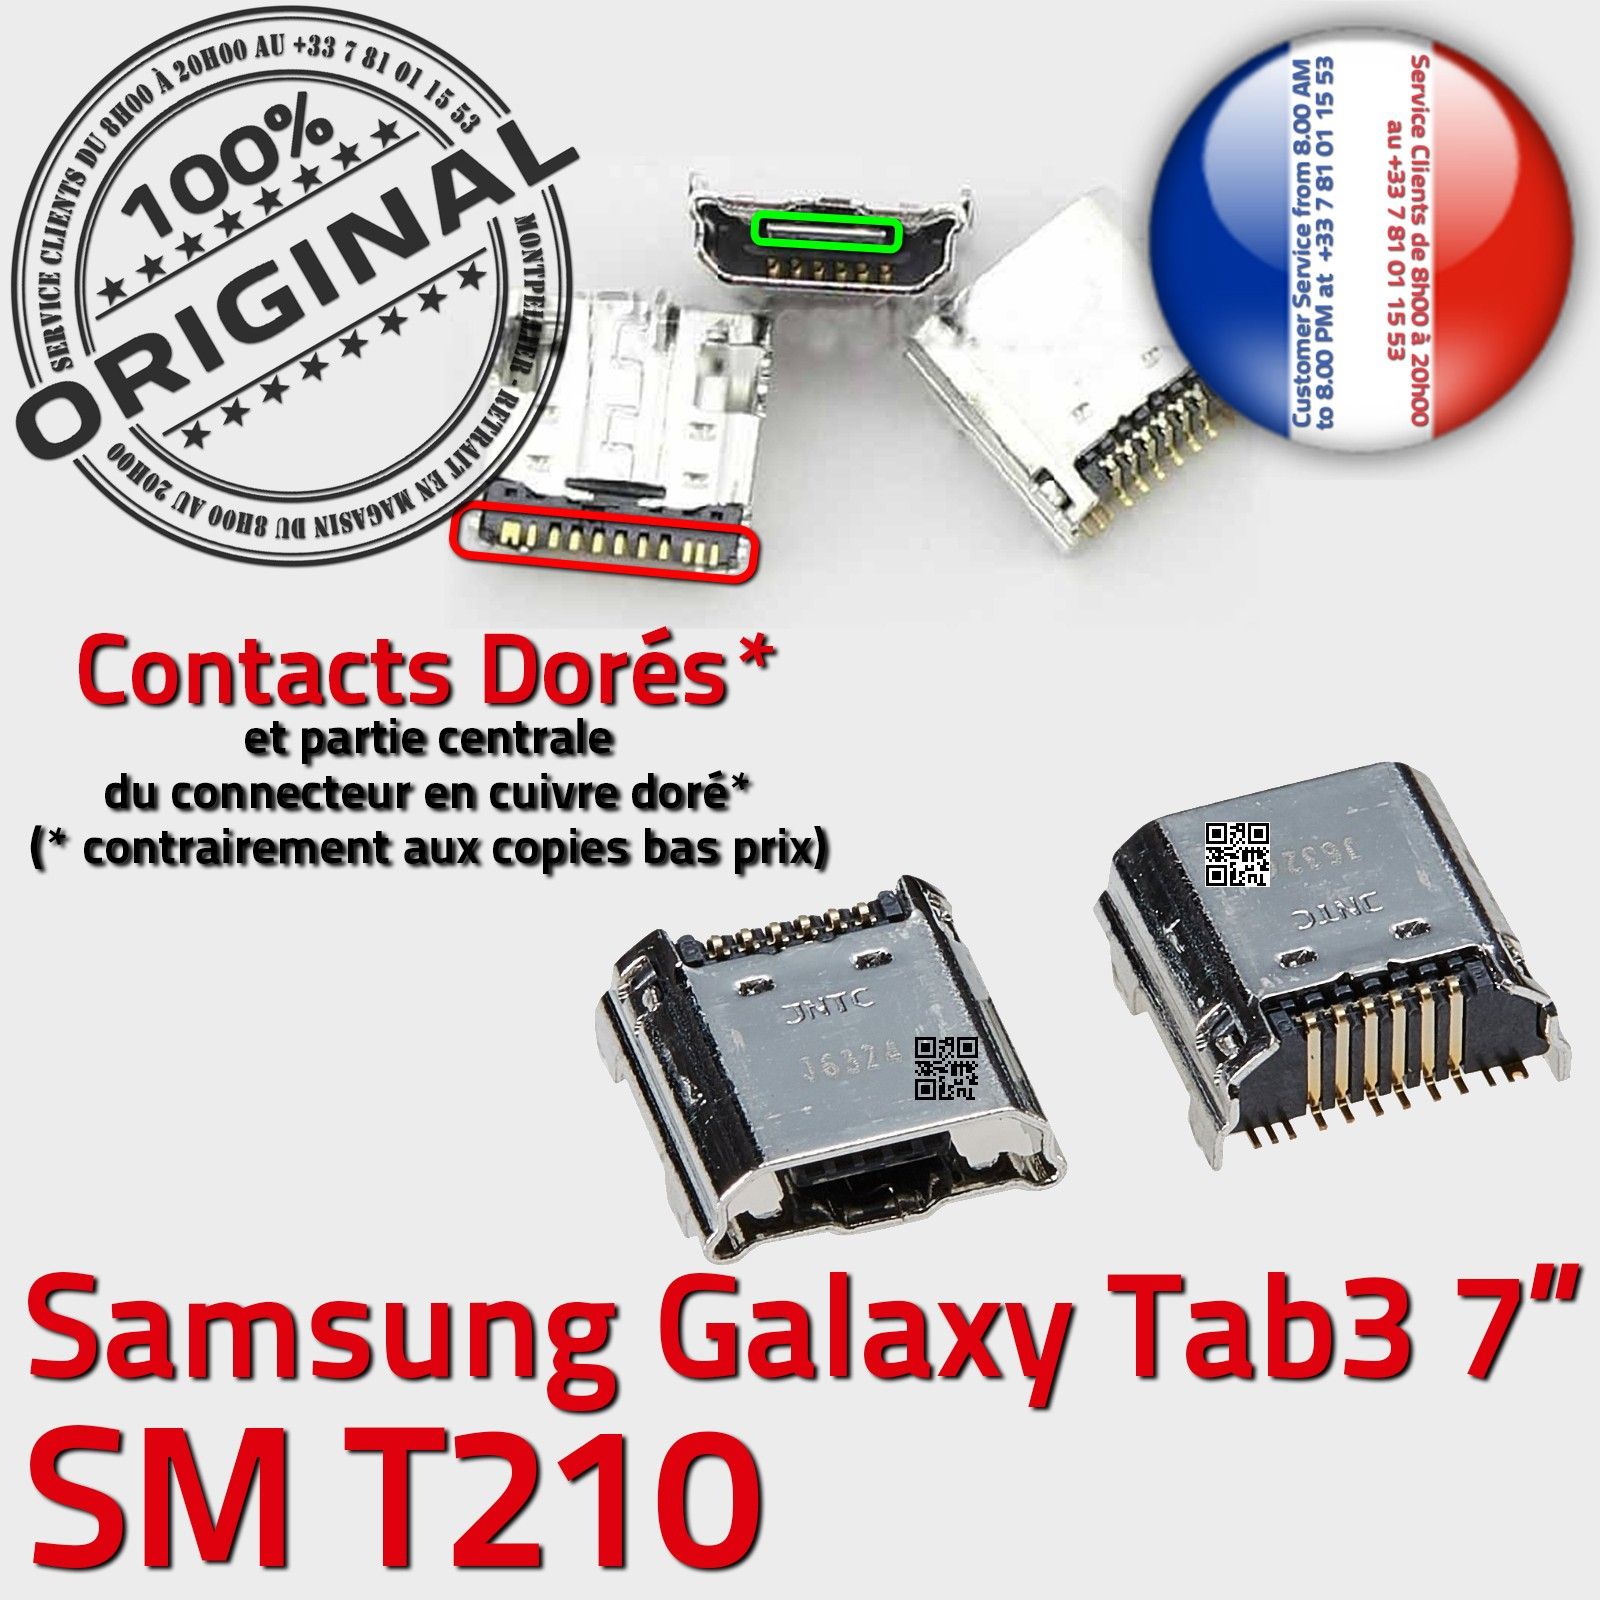 ORIGINAL Samsung Galaxy TAB 3 SM T210 Connecteur de charge à souder Micro USB Pins Dorés Dock Prise Connector Chargeur 7 inch